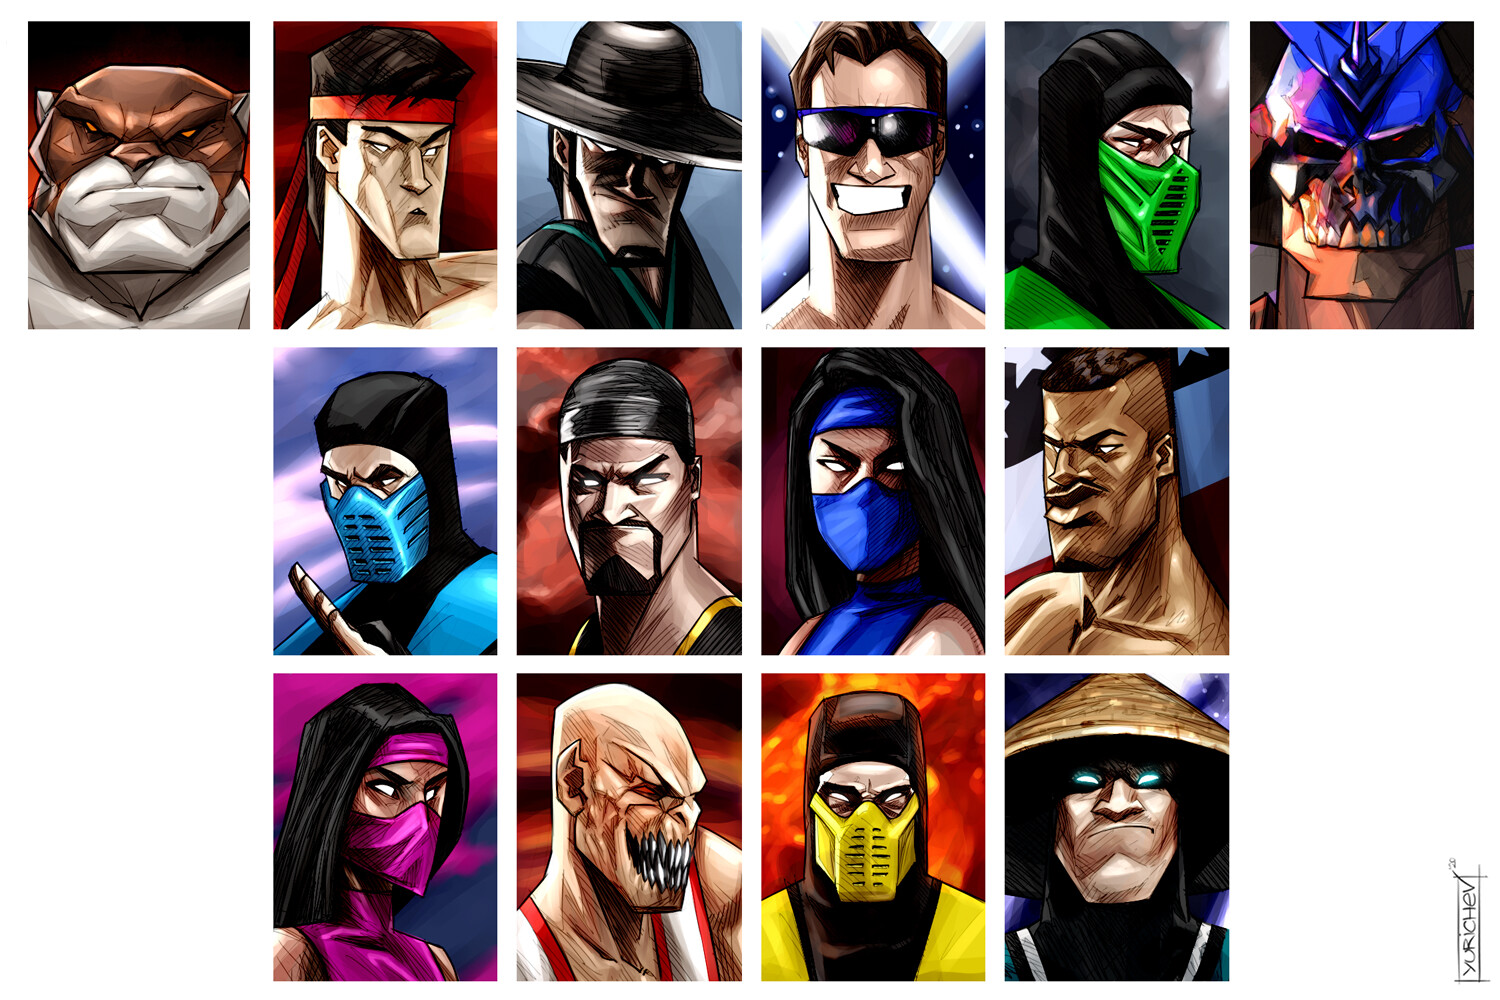 Ultimate Mortal Kombat 3 Character Select | Magnet